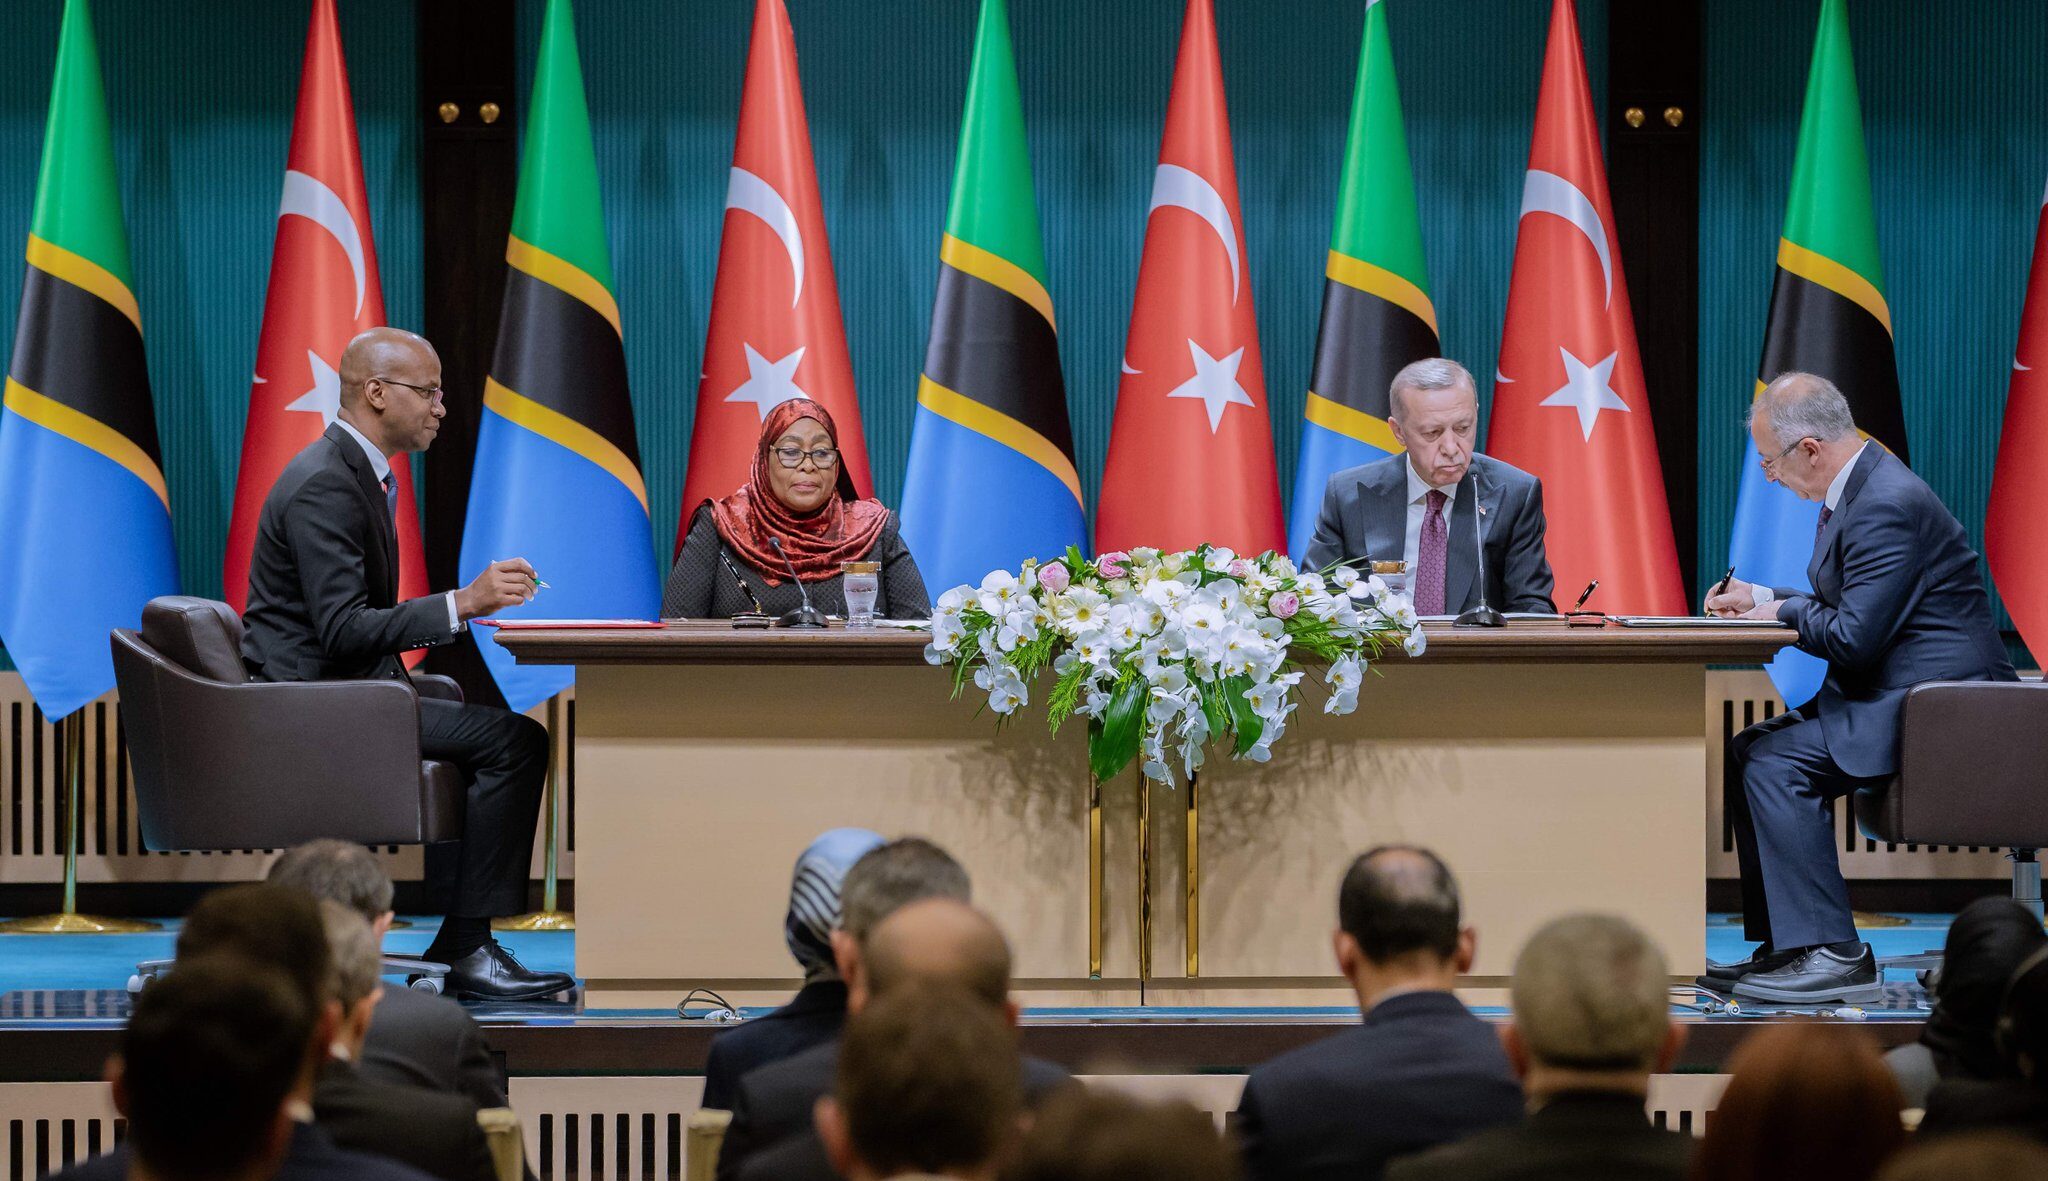 Tanzanya ve Türkiye, ikili ilişkileri güçlendirmek ve Gazze'ye ilişkin endişelerini dile getirmek amacıyla altı mutabakat zaptı imzaladı